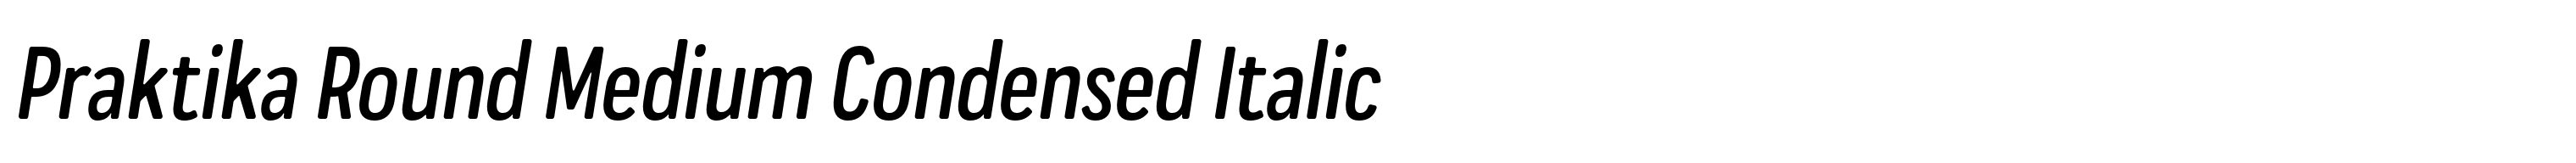 Praktika Round Medium Condensed Italic